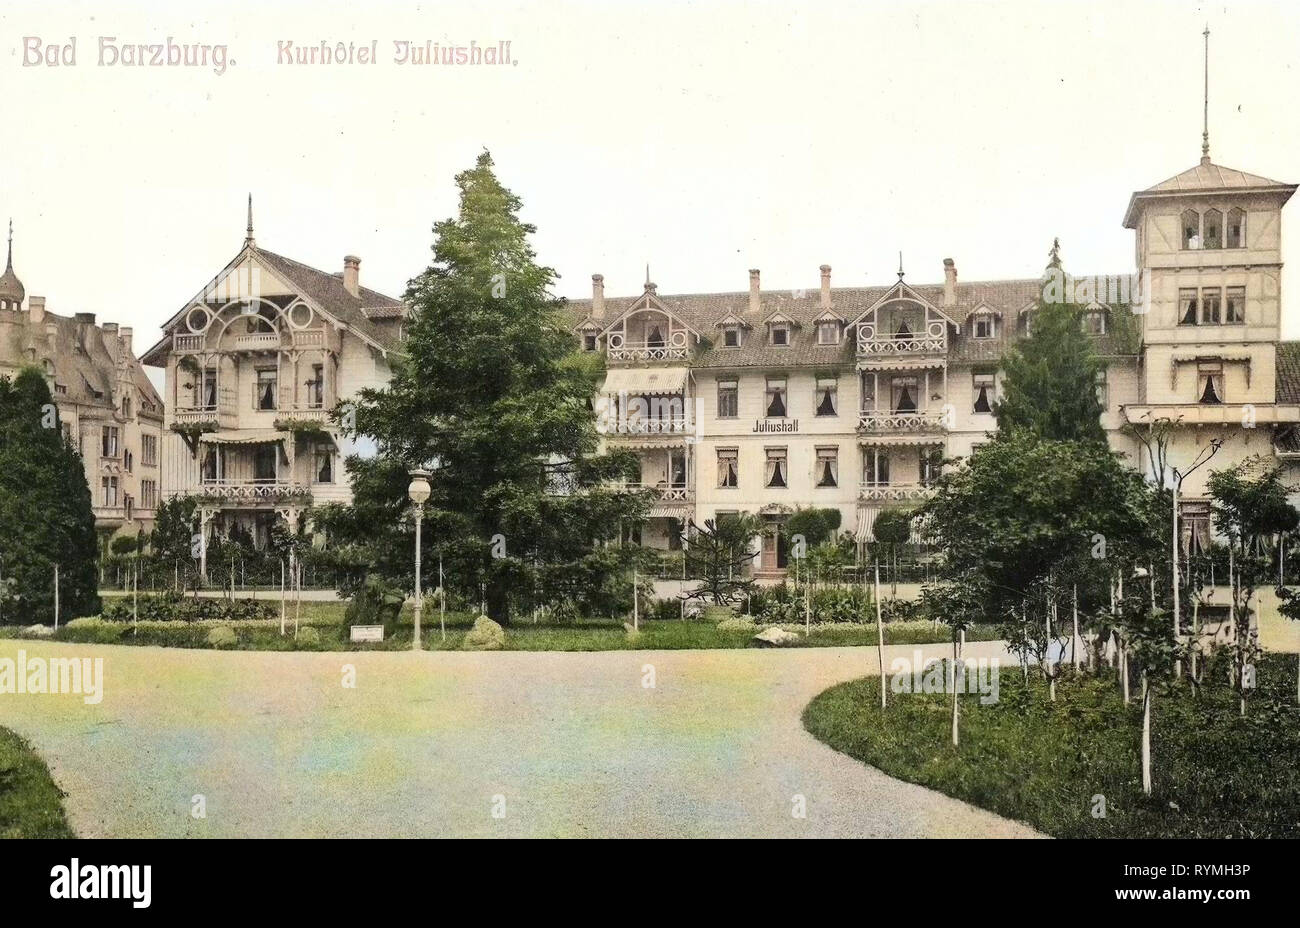 Hôtels à Bad Harzburg, Spa les bâtiments en Allemagne, 1908, Basse-Saxe, Bad Harzburg, Kurhotel Juliushall Banque D'Images